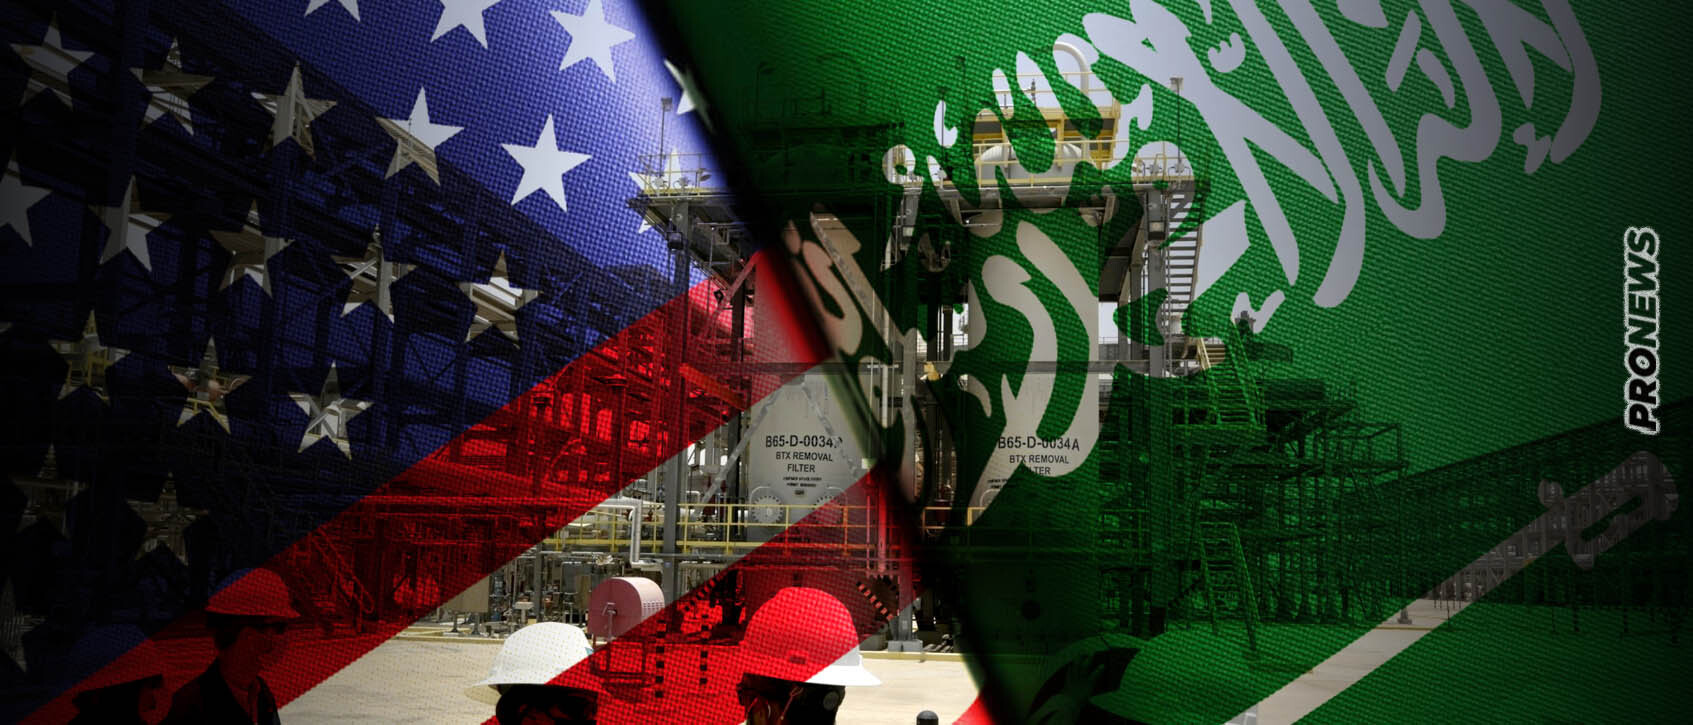 Σύγκρουση ΗΠΑ και με Σ.Αραβία: Η Ουάσινγκτον επιβάλει πλαφόν στο πετρέλαιο του Ριάντ – «Εμπάργκο αν συμβεί αυτό»